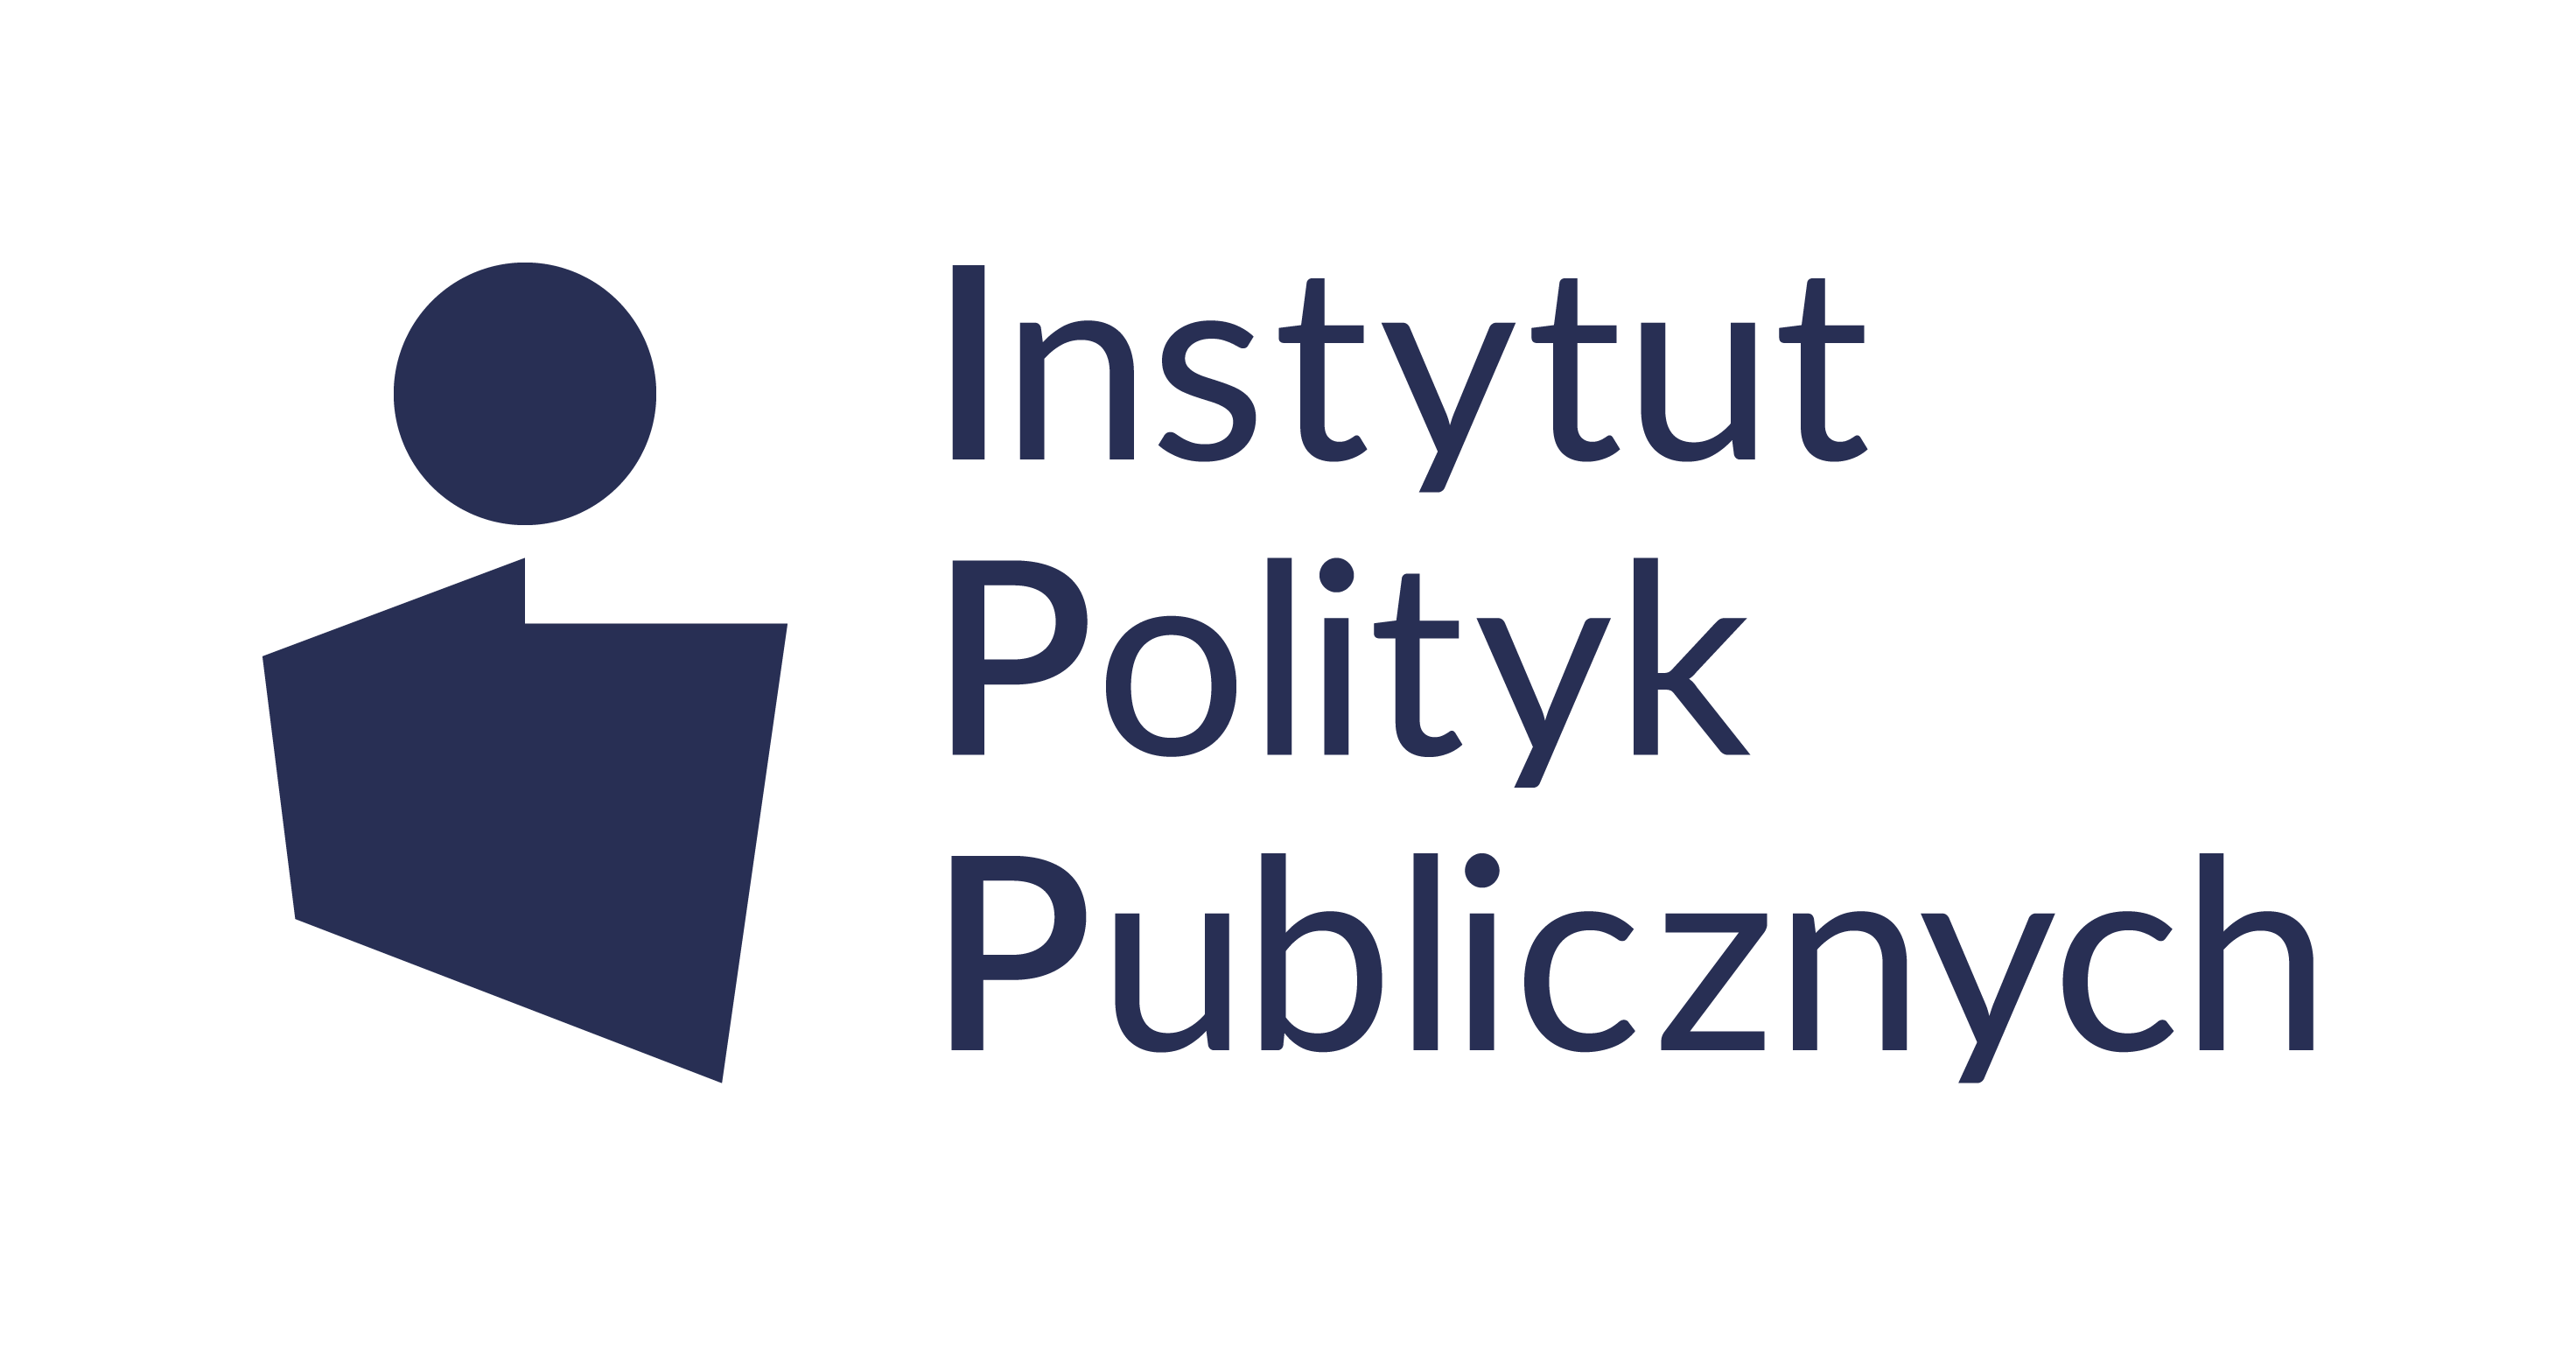 Instytut Polityk Publicznych 